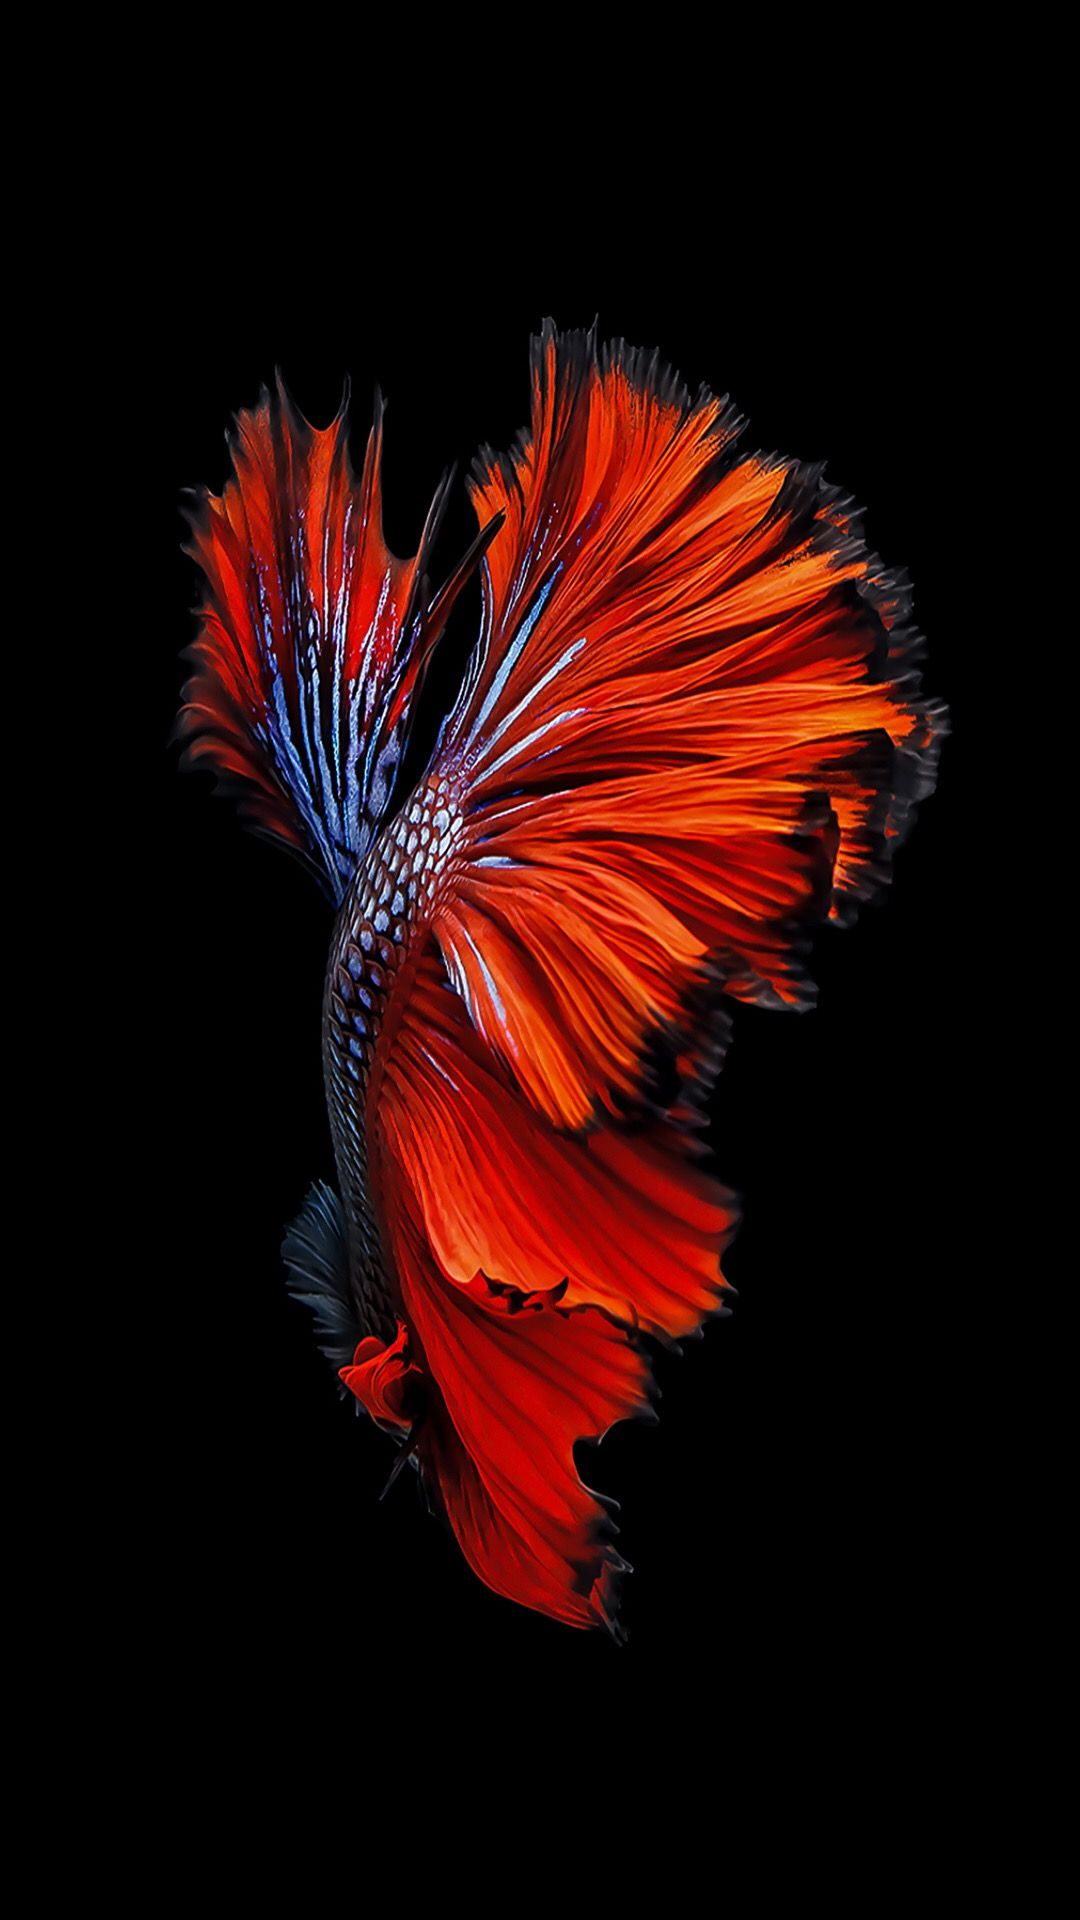 toucher poisson fond d'écran en direct,rouge,orange,plume,art fractal,graphique